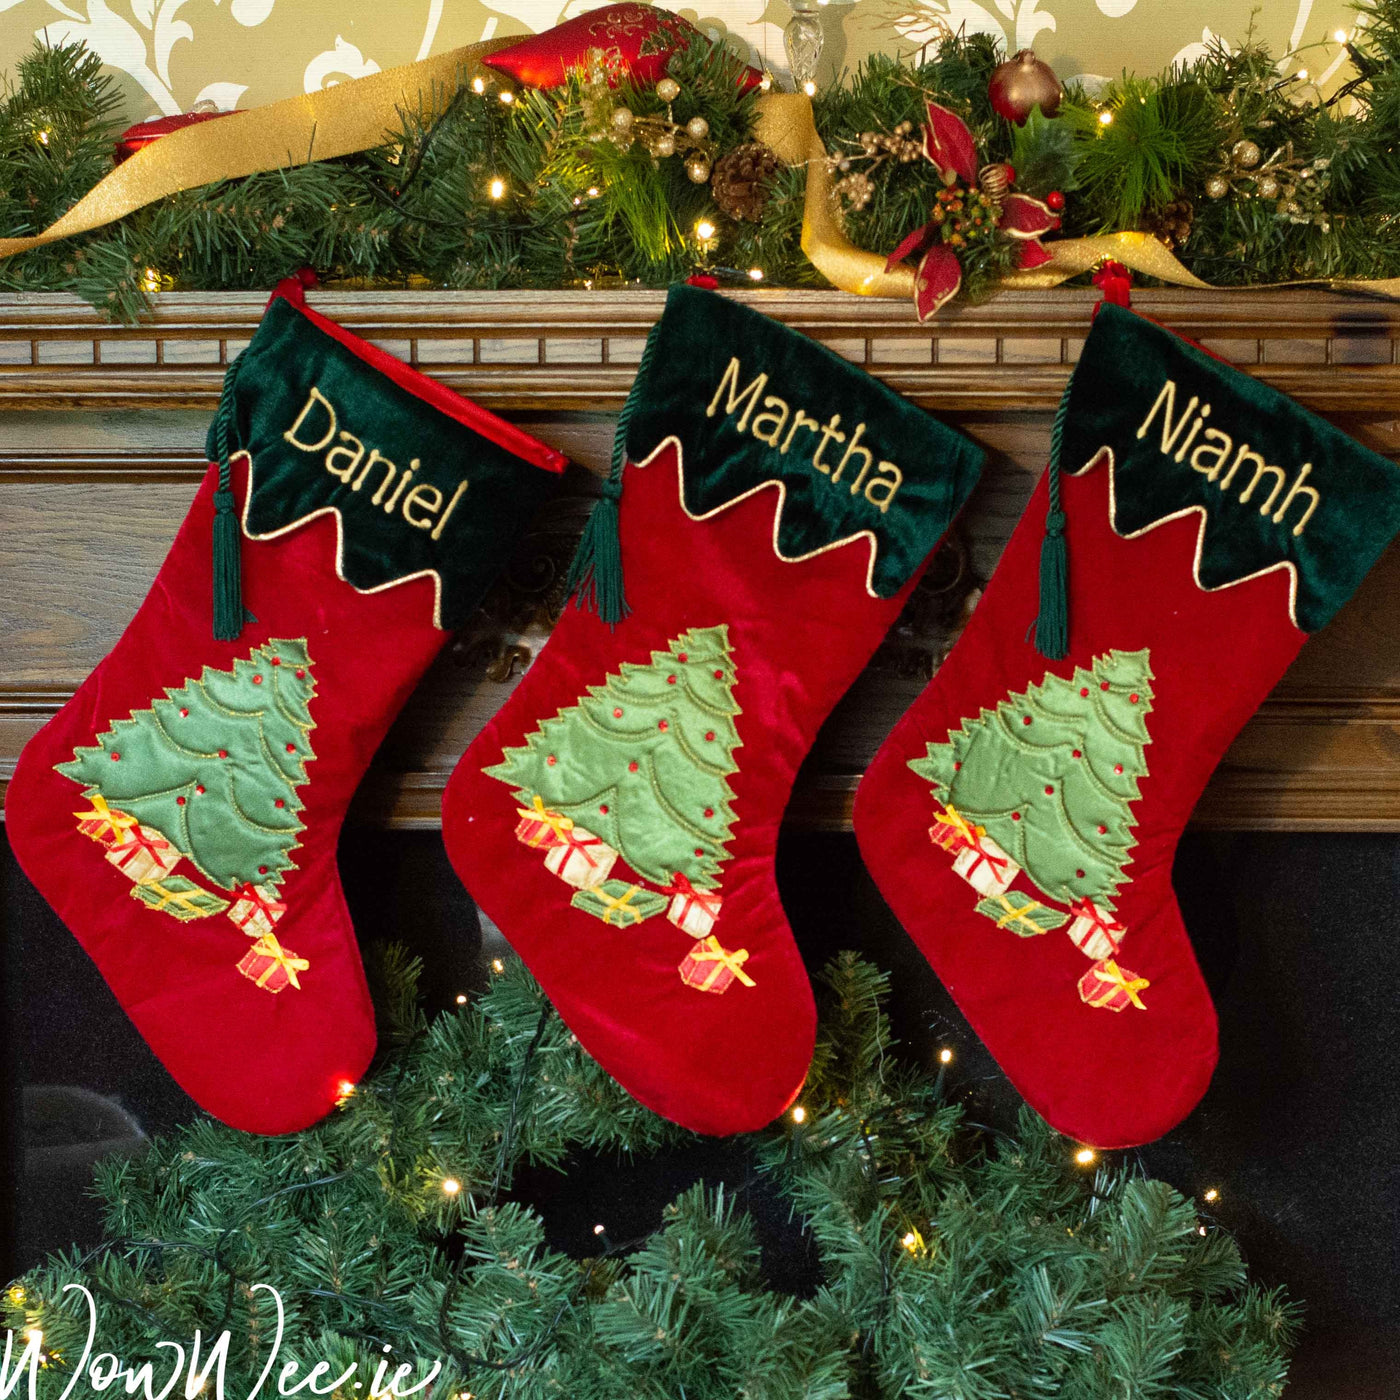 Personalised Christmas Stockings | Personalised Christmas Stockings Ireland | Christmas Stockings | WowWee.ie